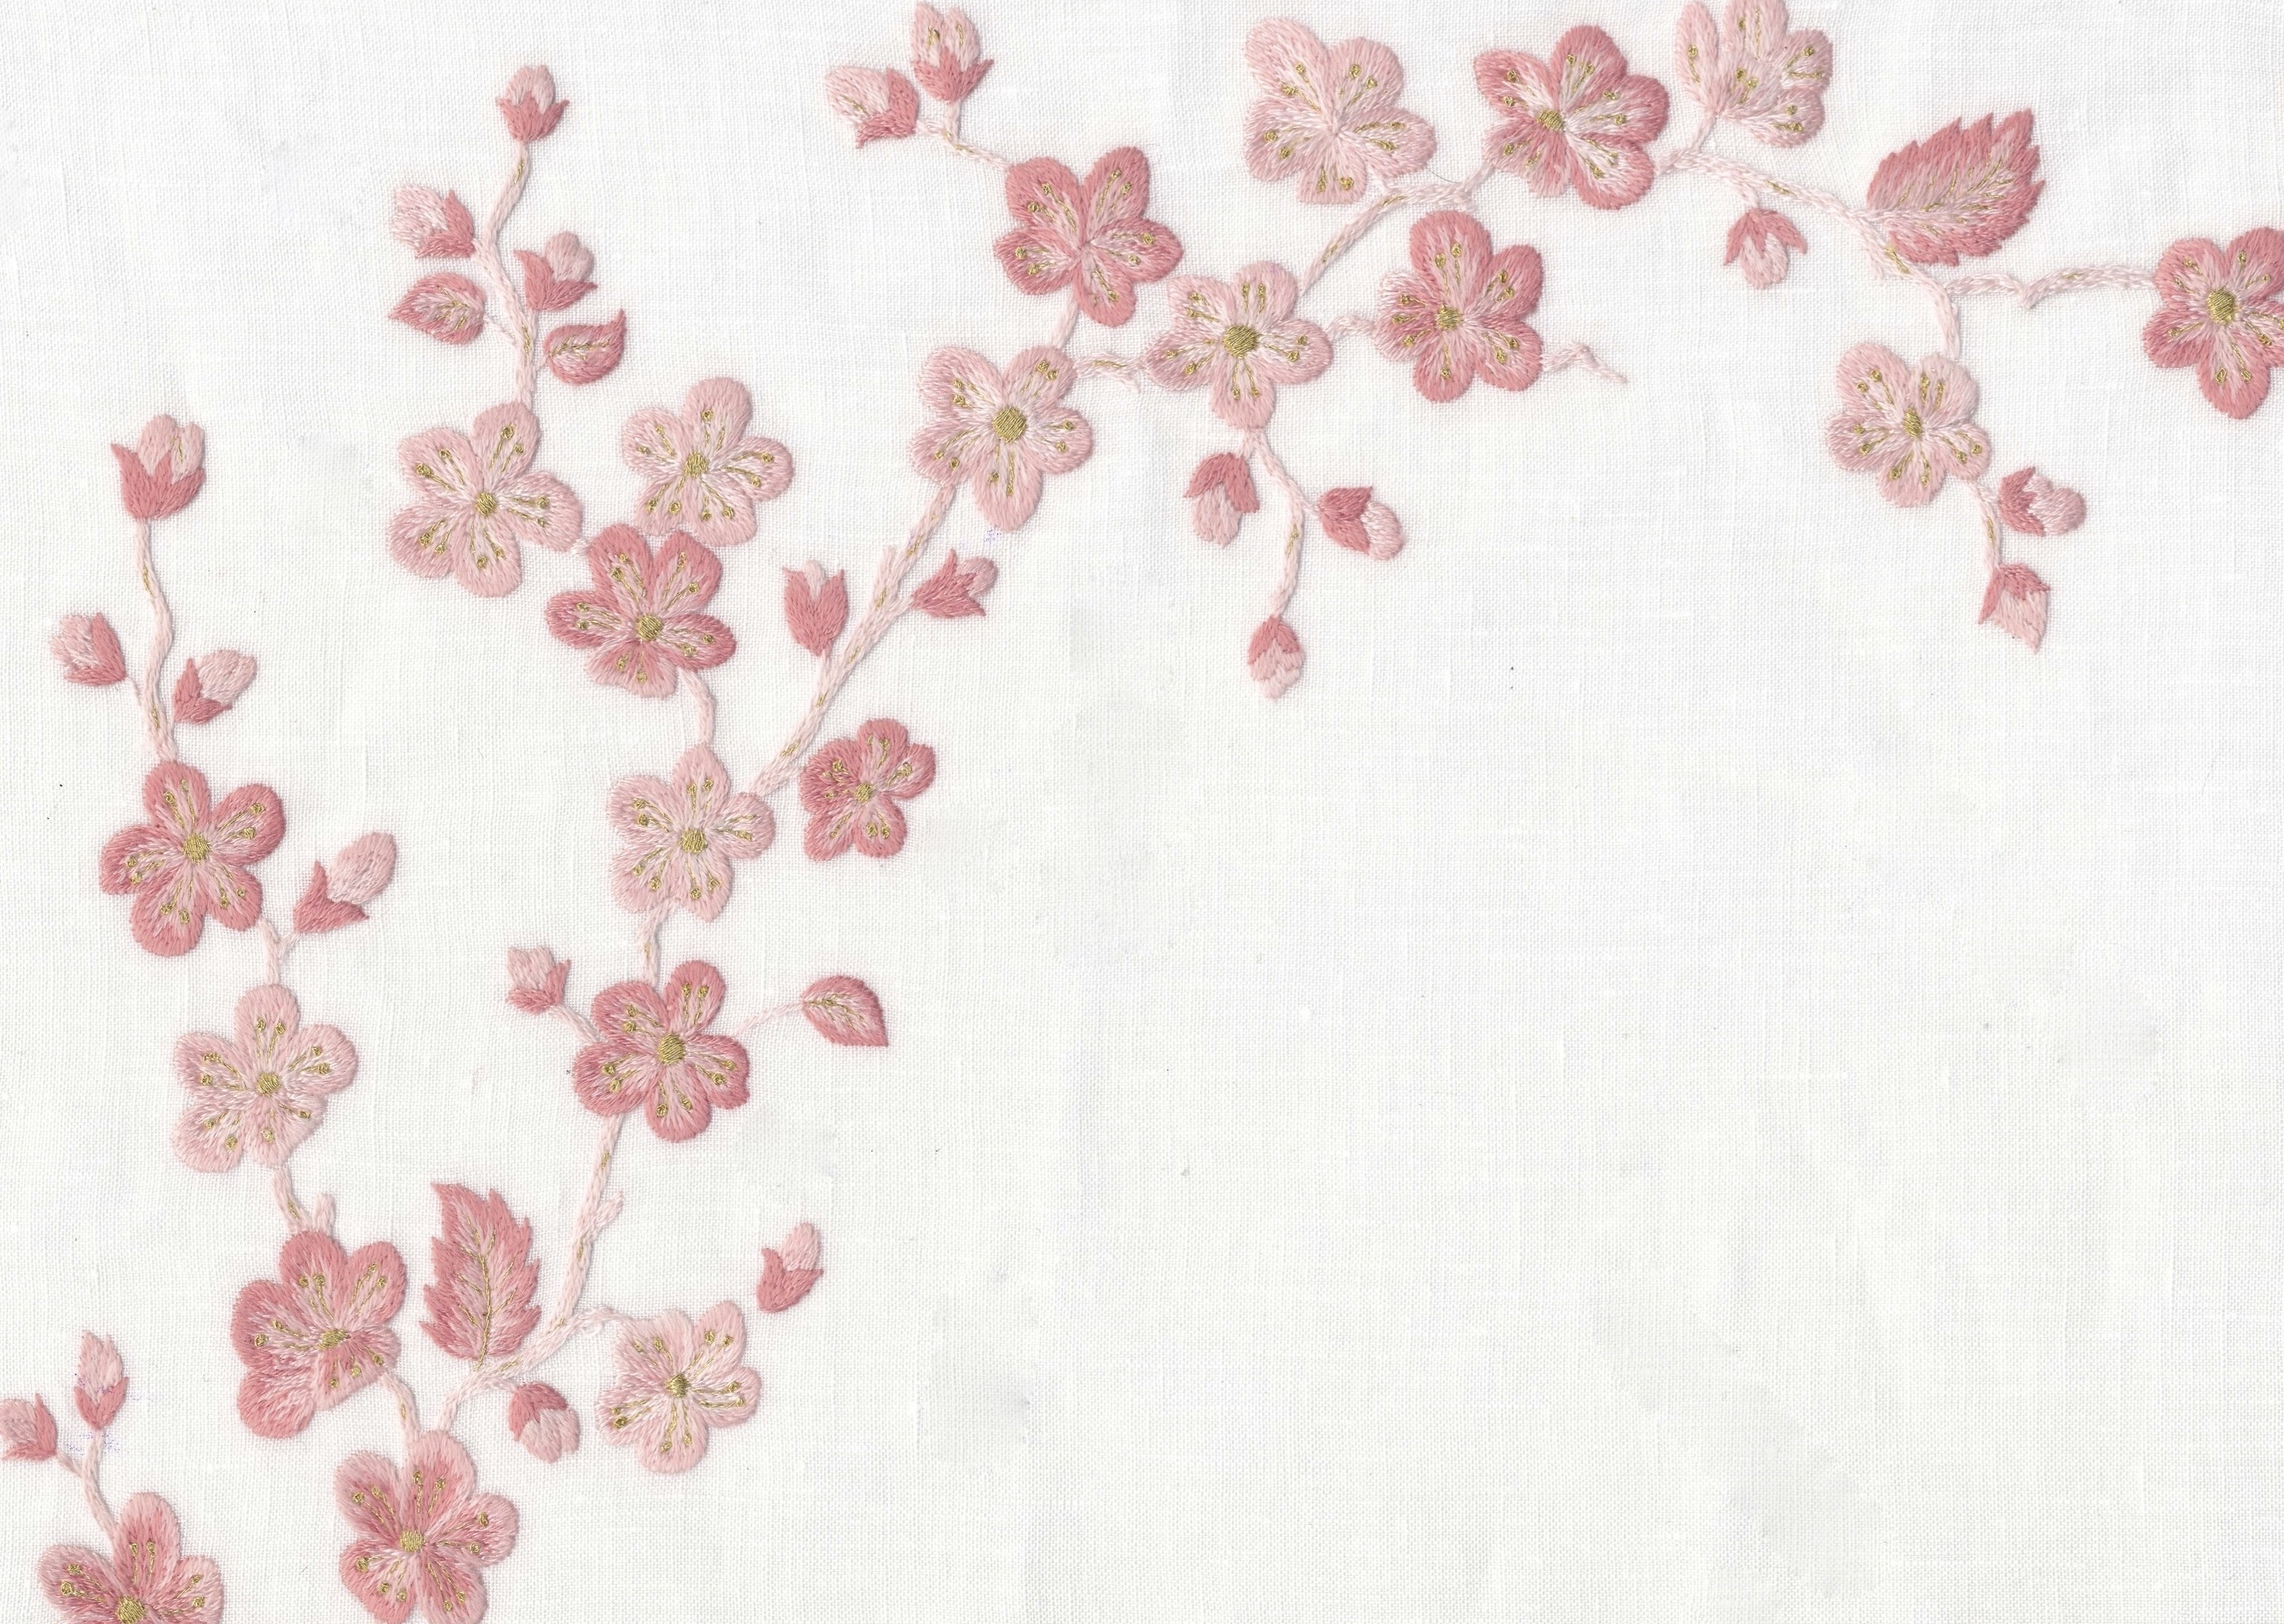 "Fleurs de pommier" placemat pattern